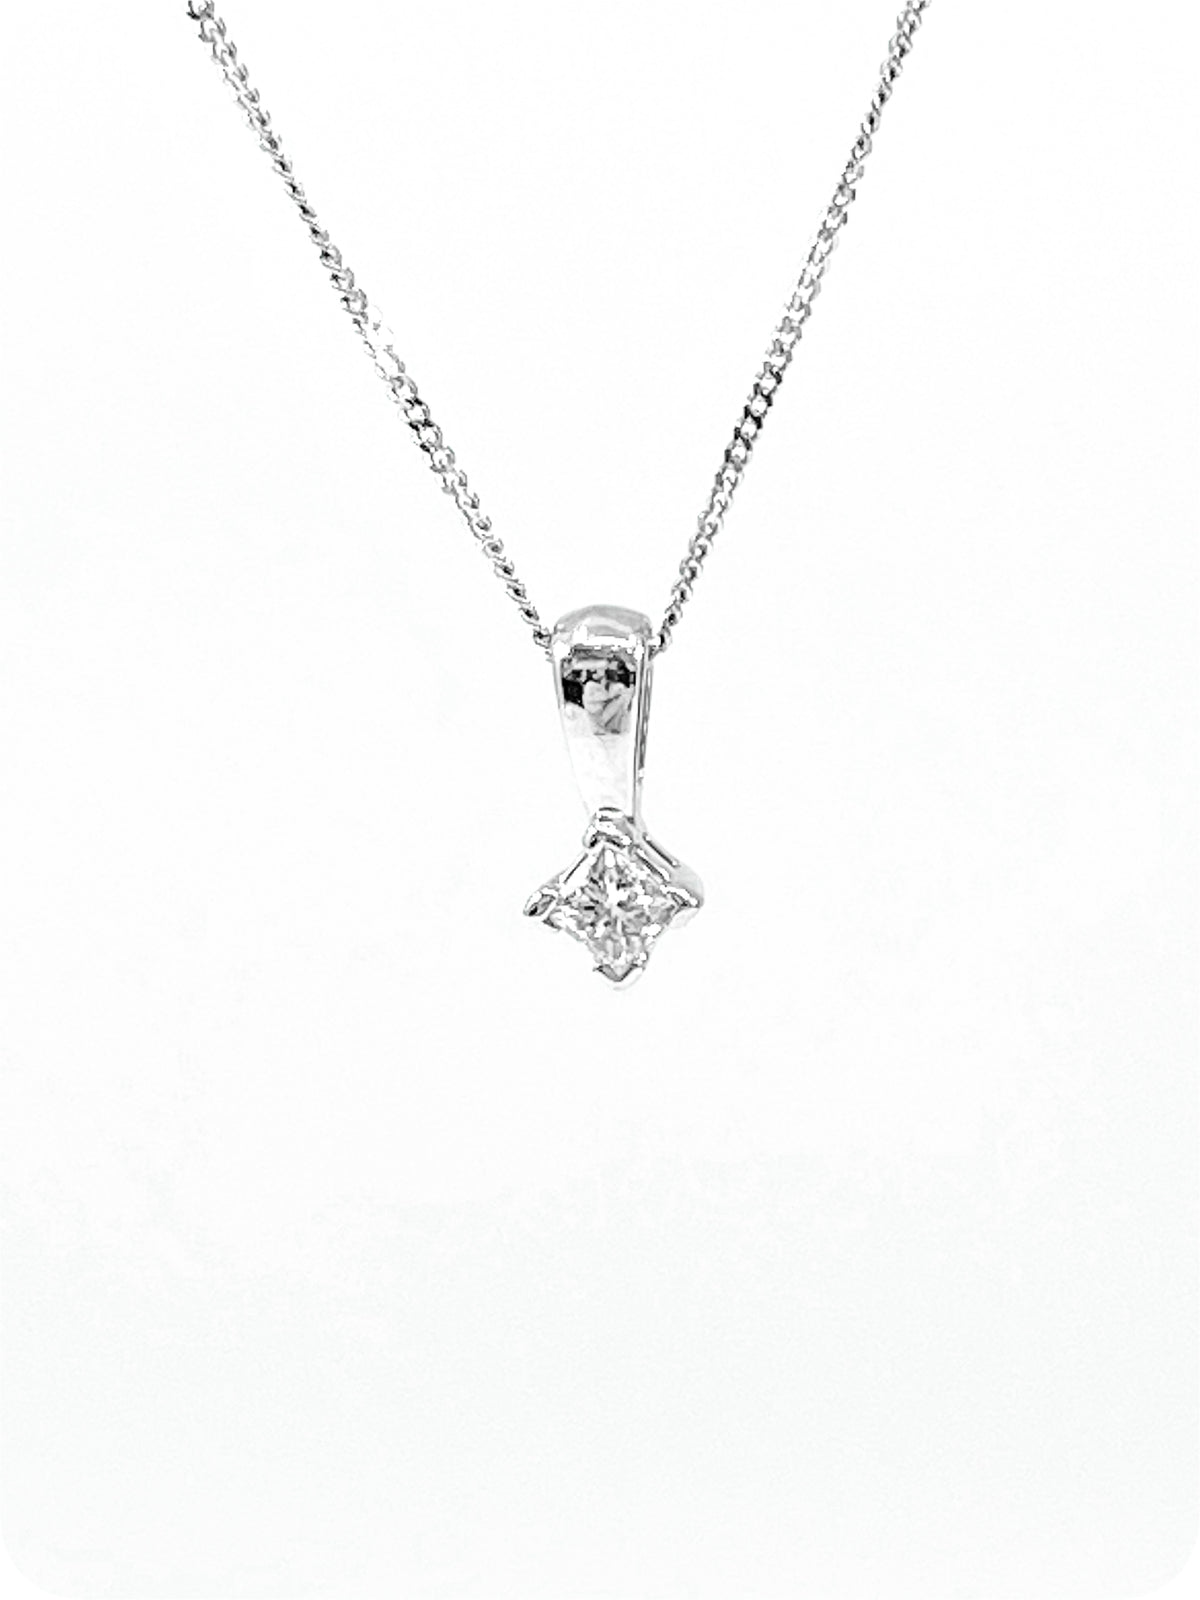 14K White Gold 0.10cttw Princess Cut Square Cut Canadian Diamond Necklace, 18”